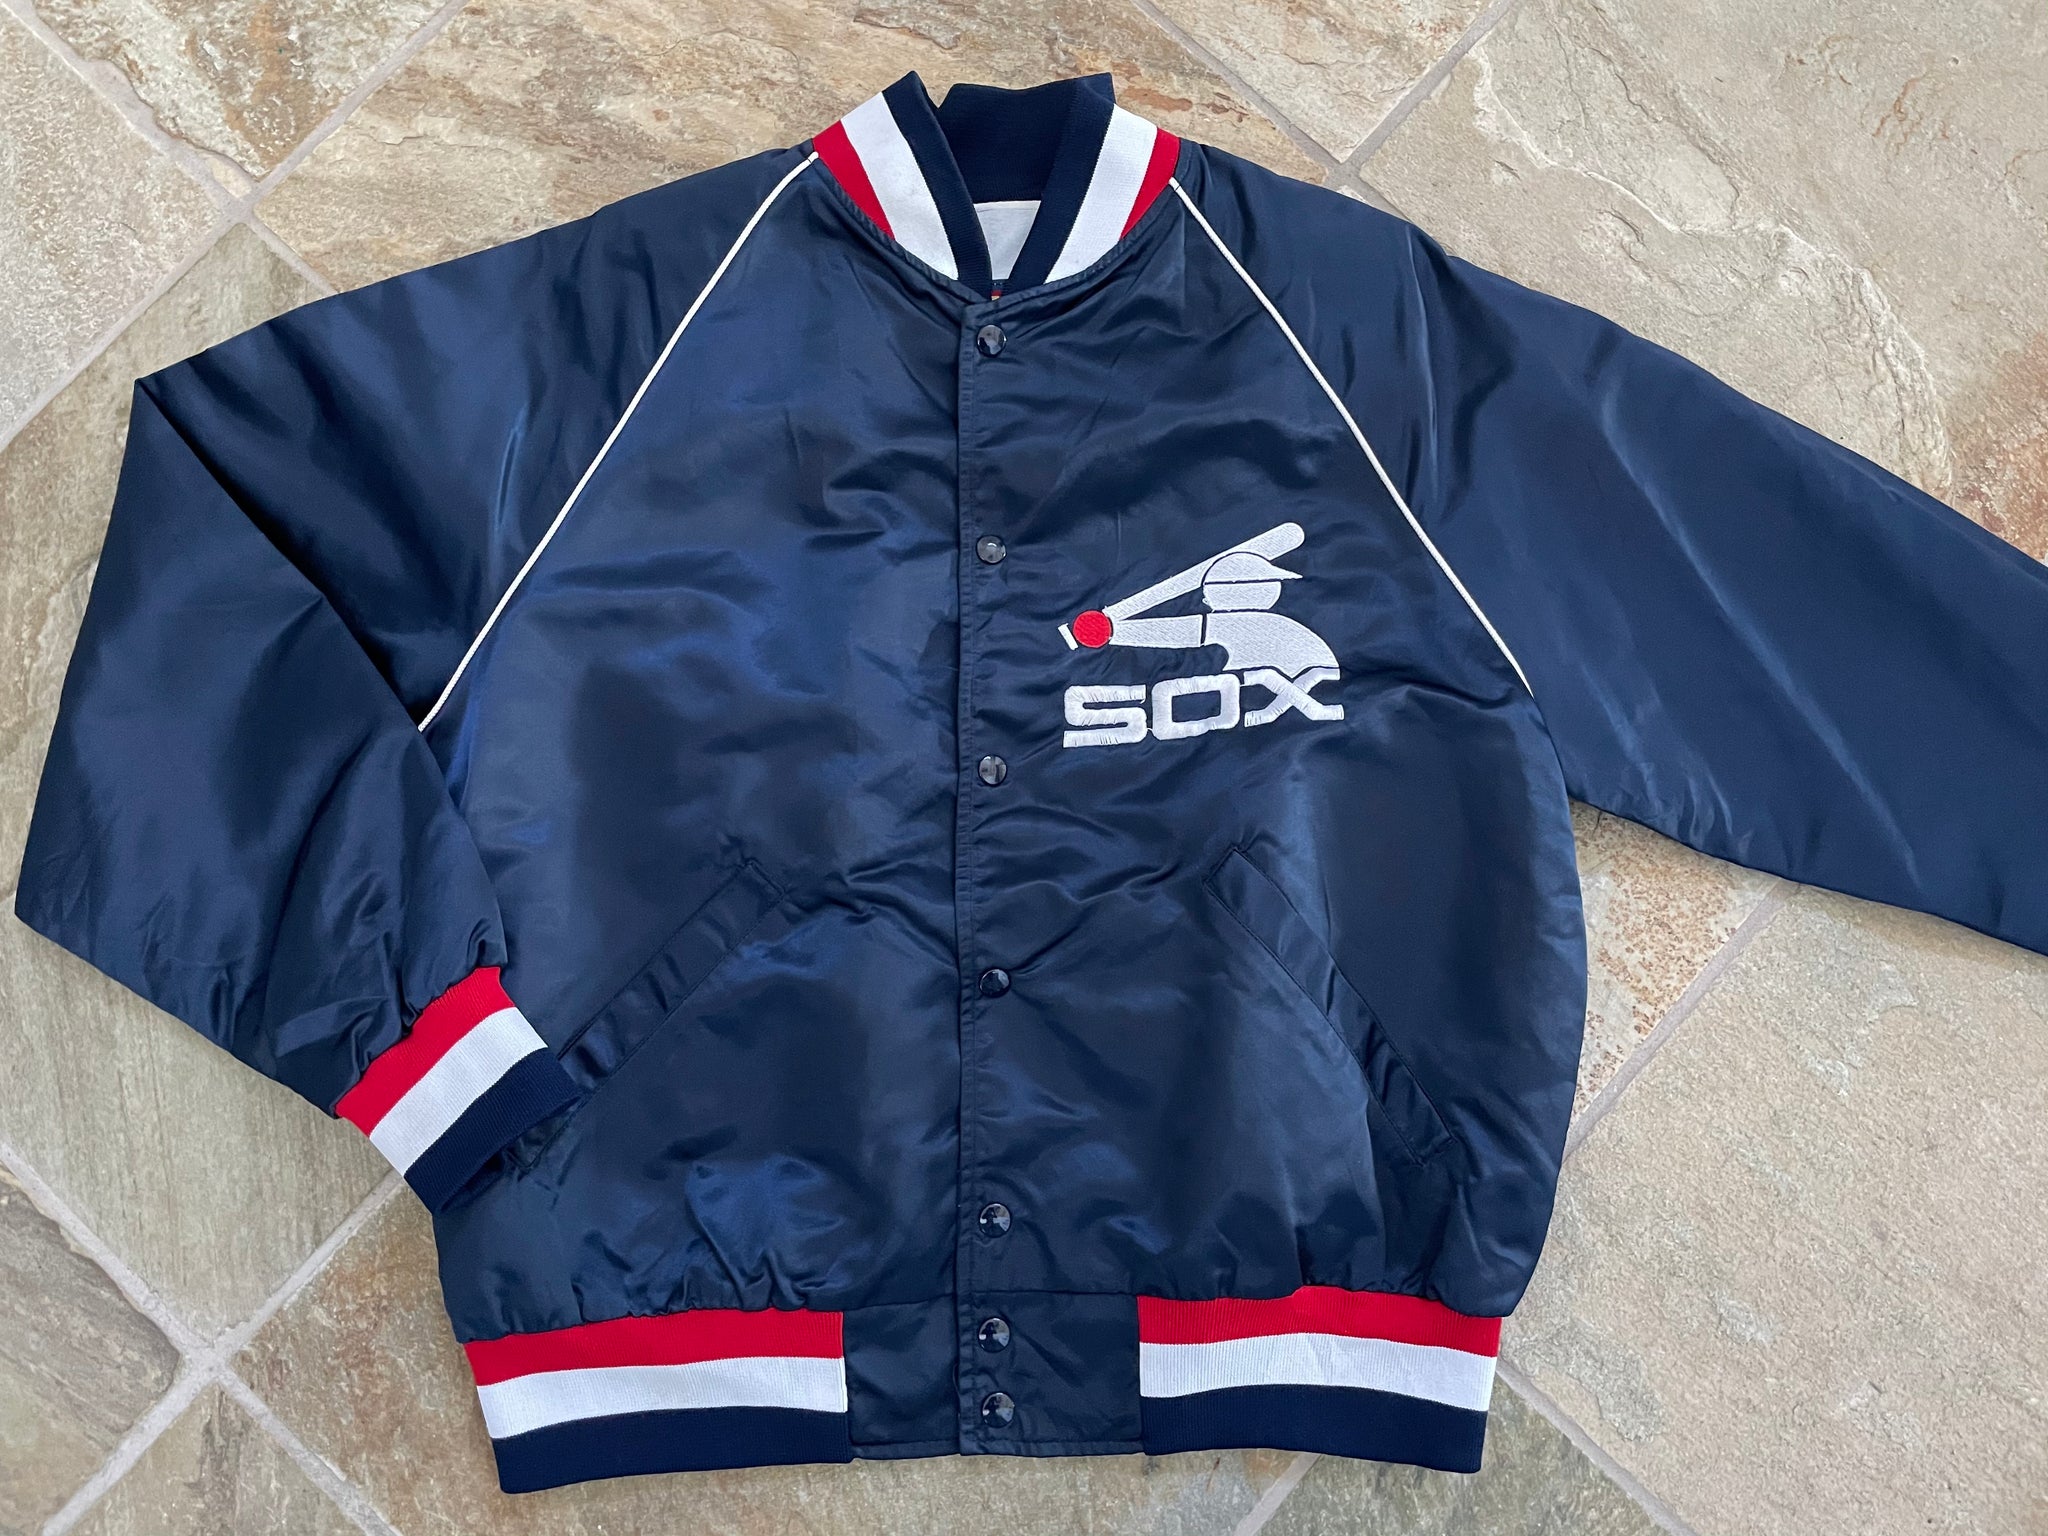 Vintage MLB - Chicago White Sox Satin Jacket 1990s Large